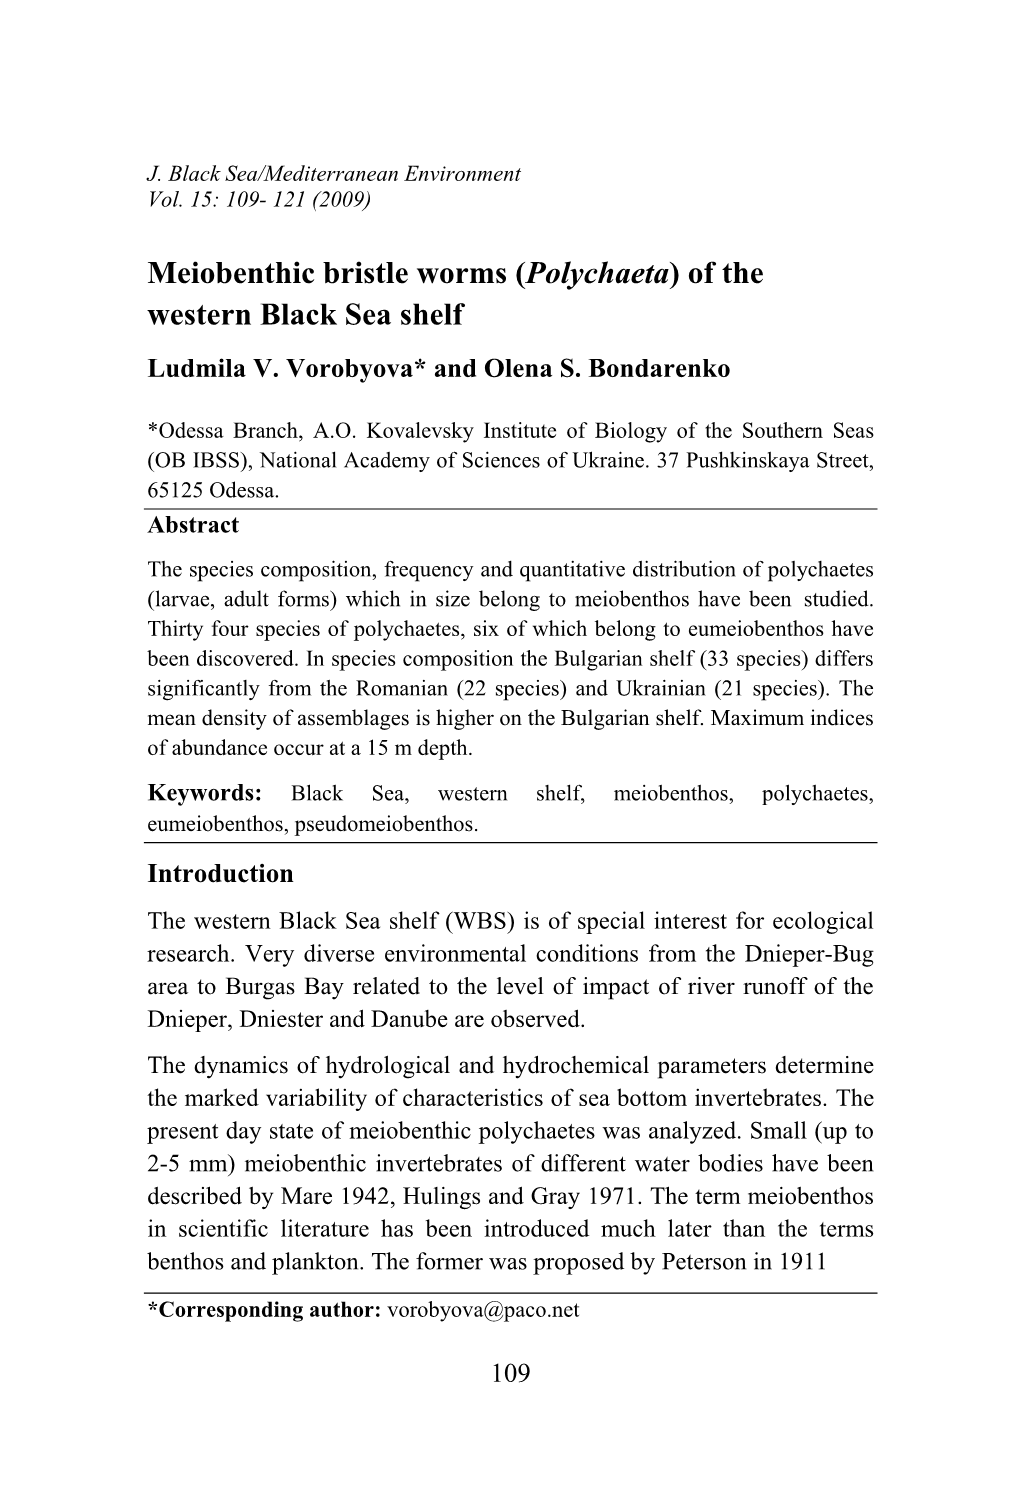 Polychaetes of the Western Black Sea Meiobenthos